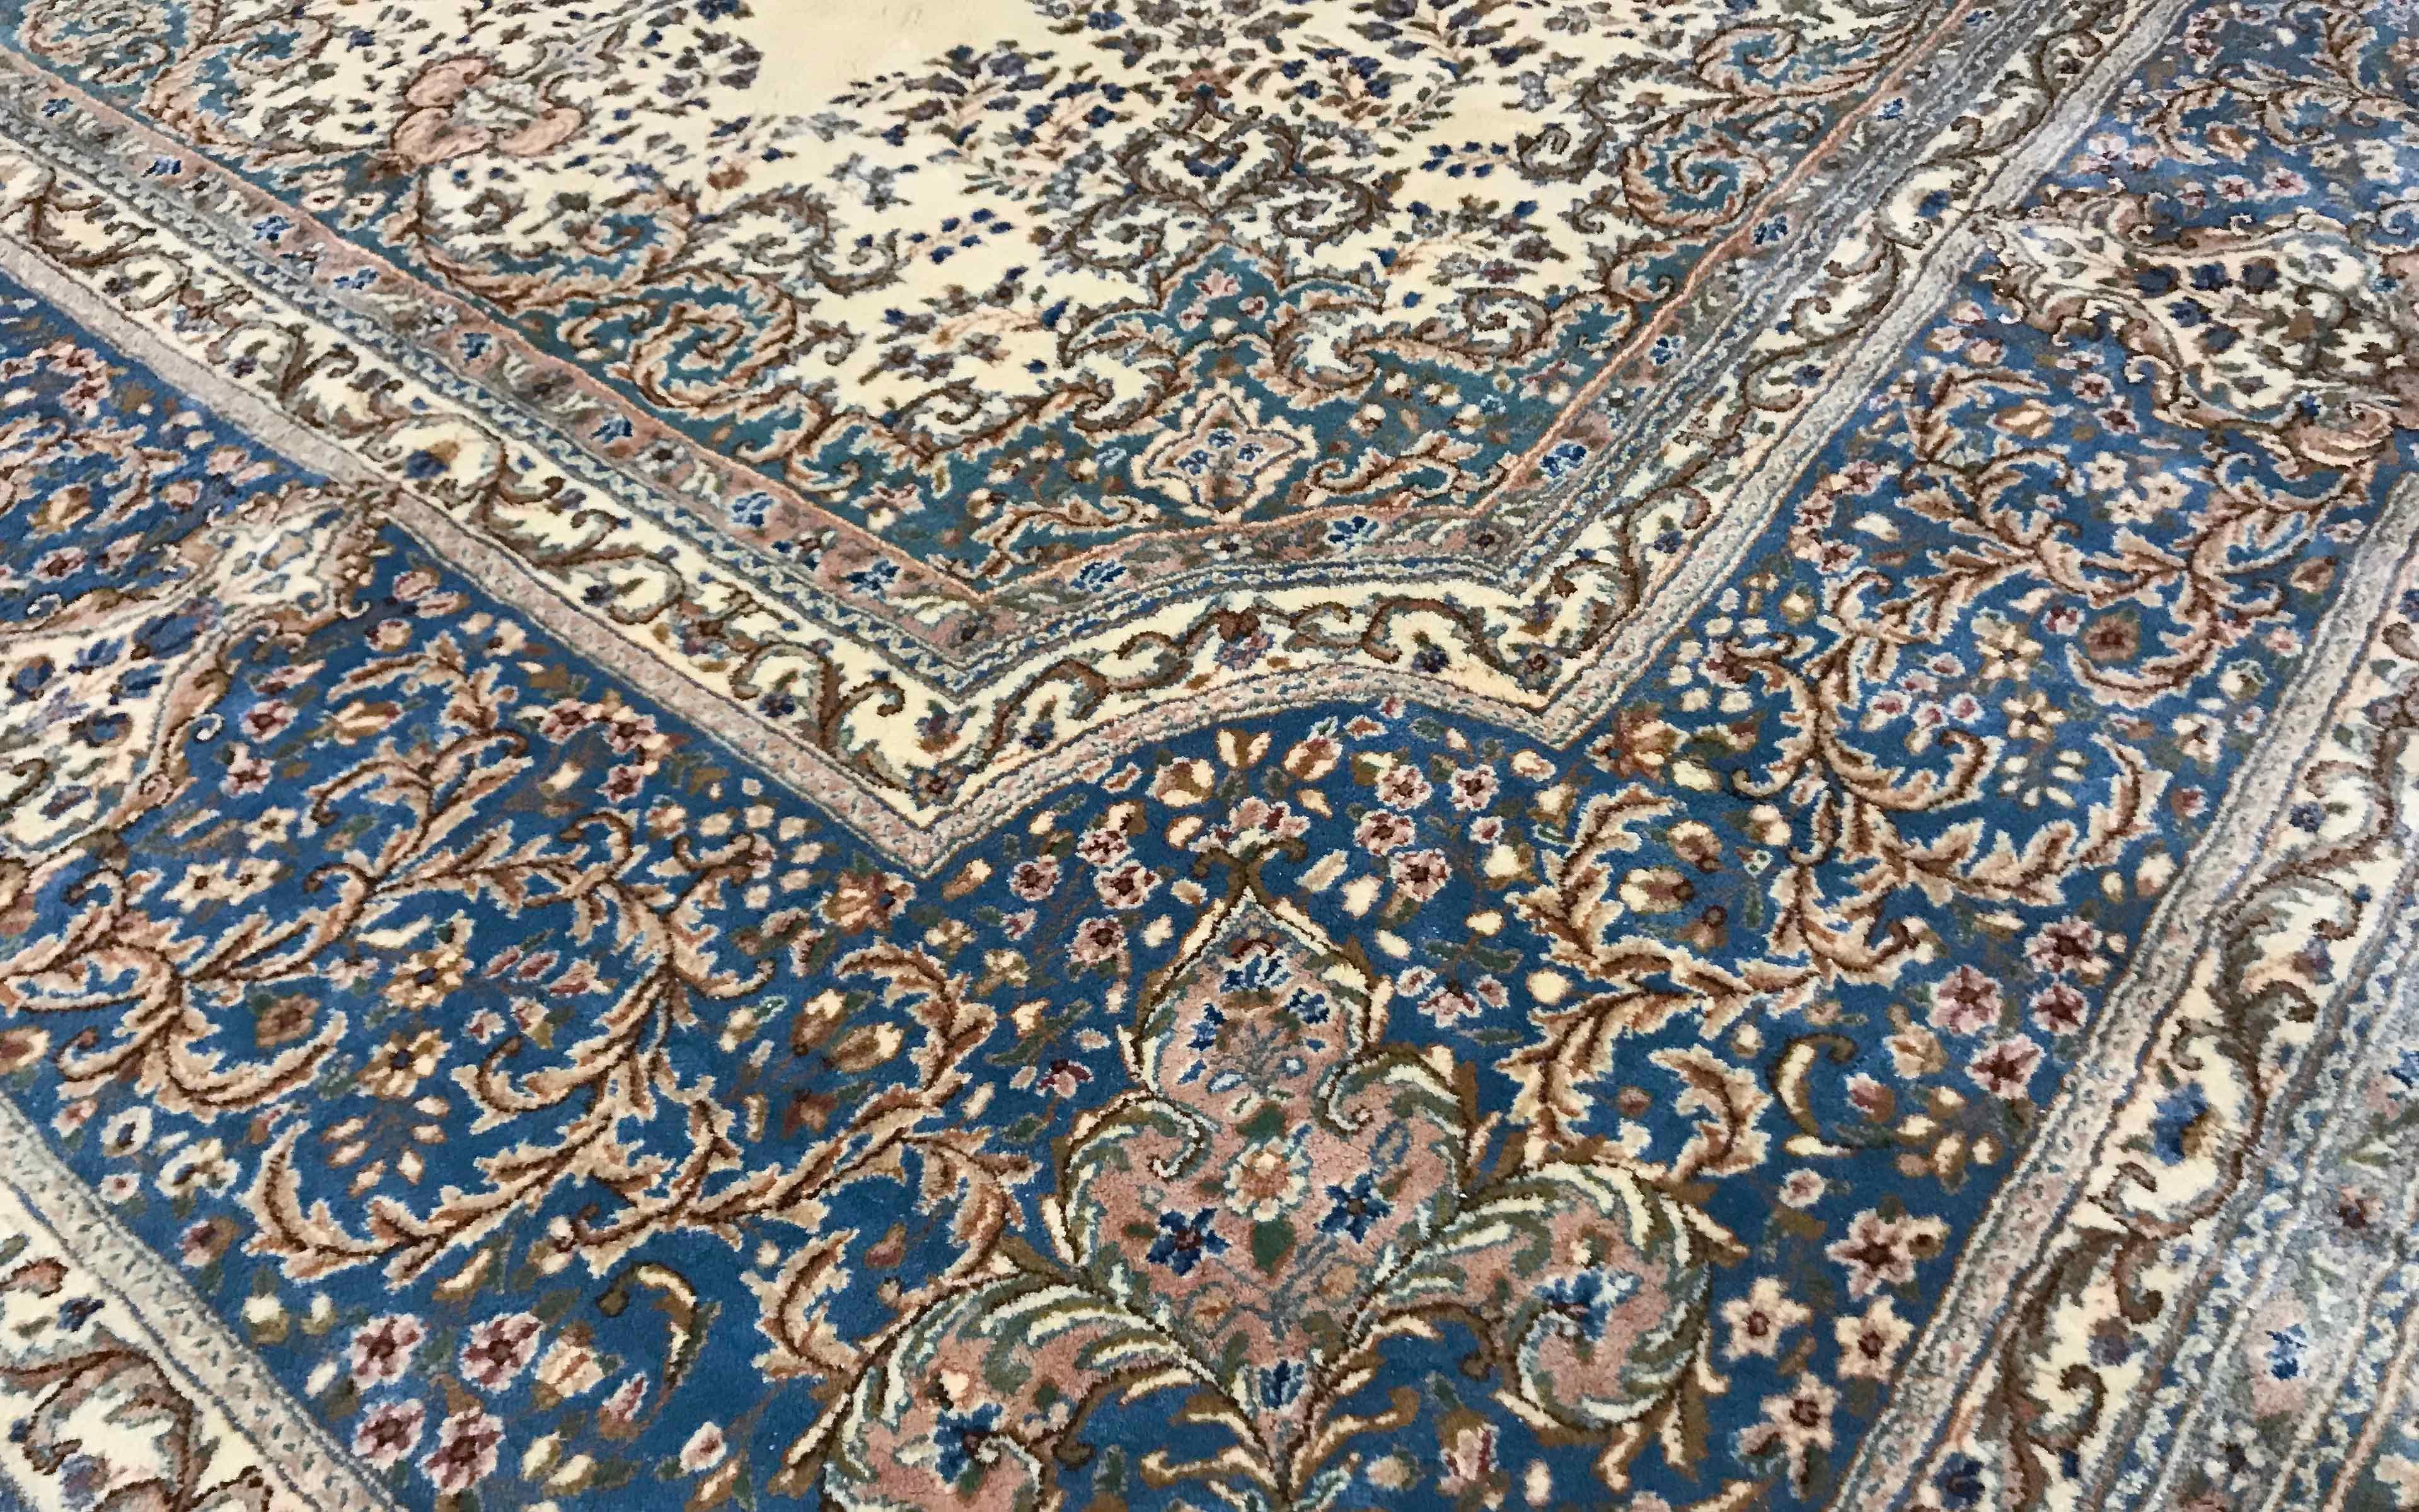 Vintage Oversize Persian Kerman Ivory / Blue Rug, circa 1940. Le fond ivoire doux est le cadre de ce tapis pittoresque avec un médaillon central dont les couleurs bleues et le style sont répétés dans les bordures pour créer ce tapis de grande taille